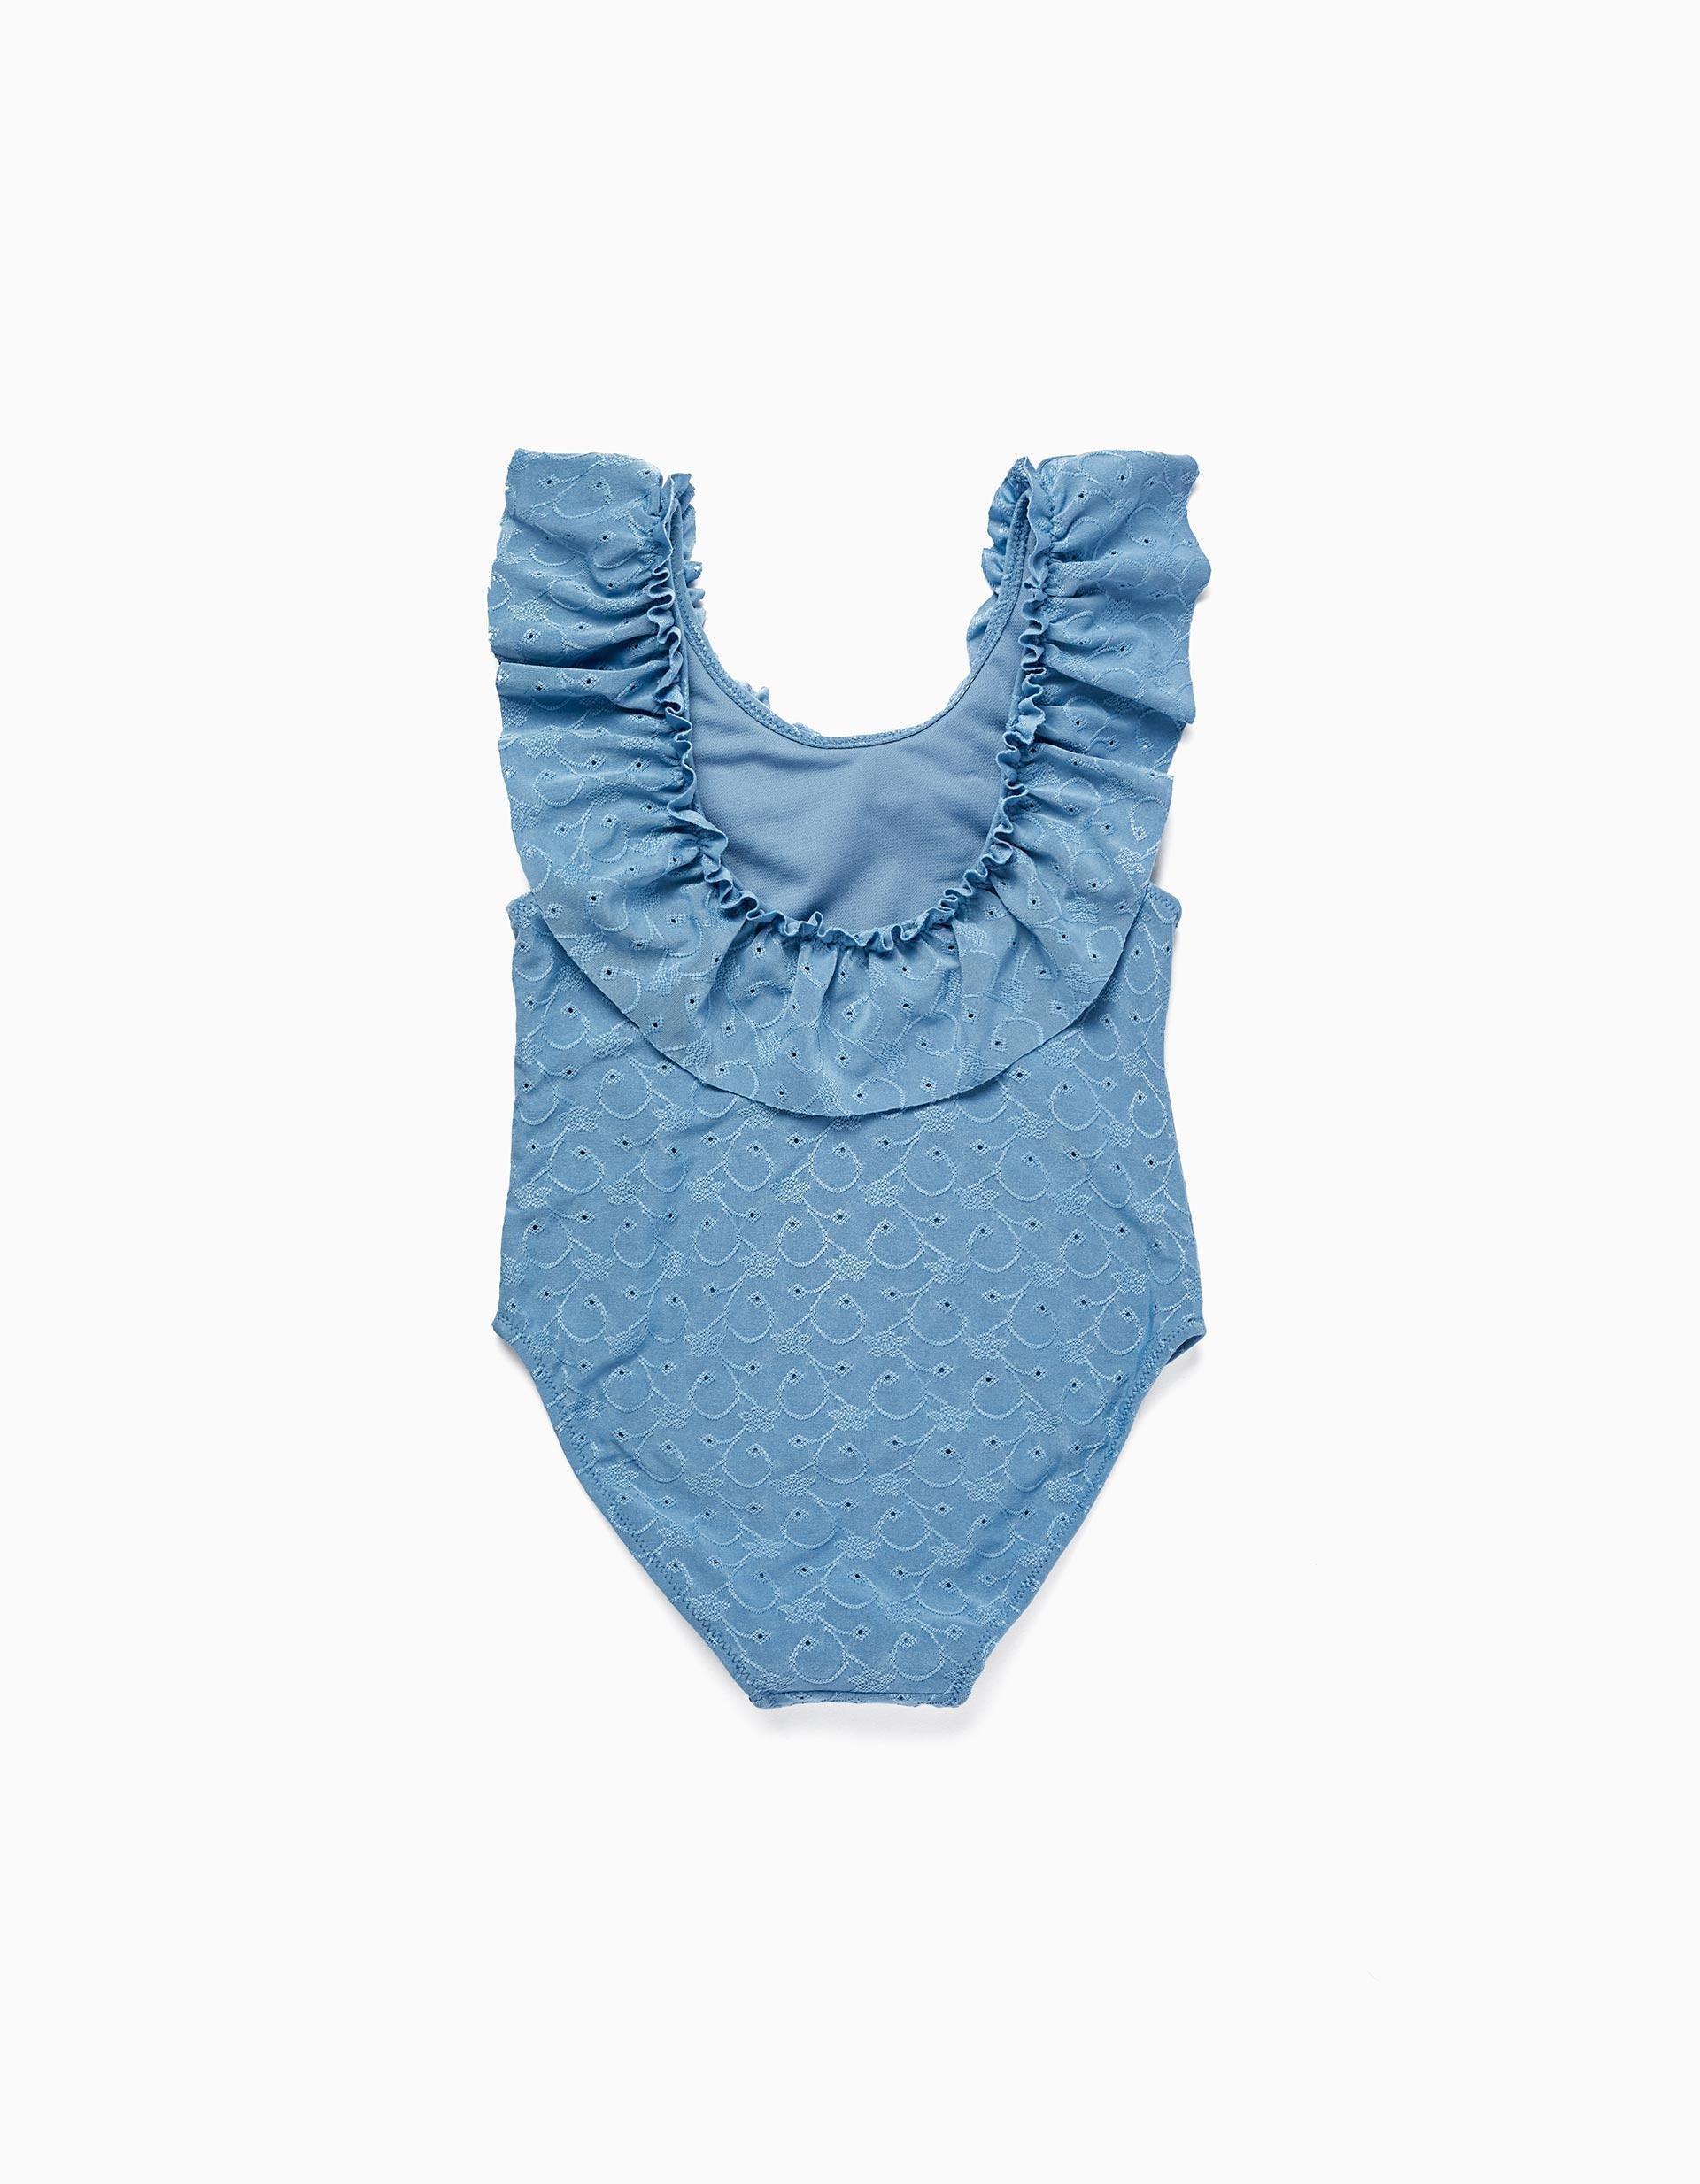 Gant - Blue Ruffled Swimsuit, Kids Girls